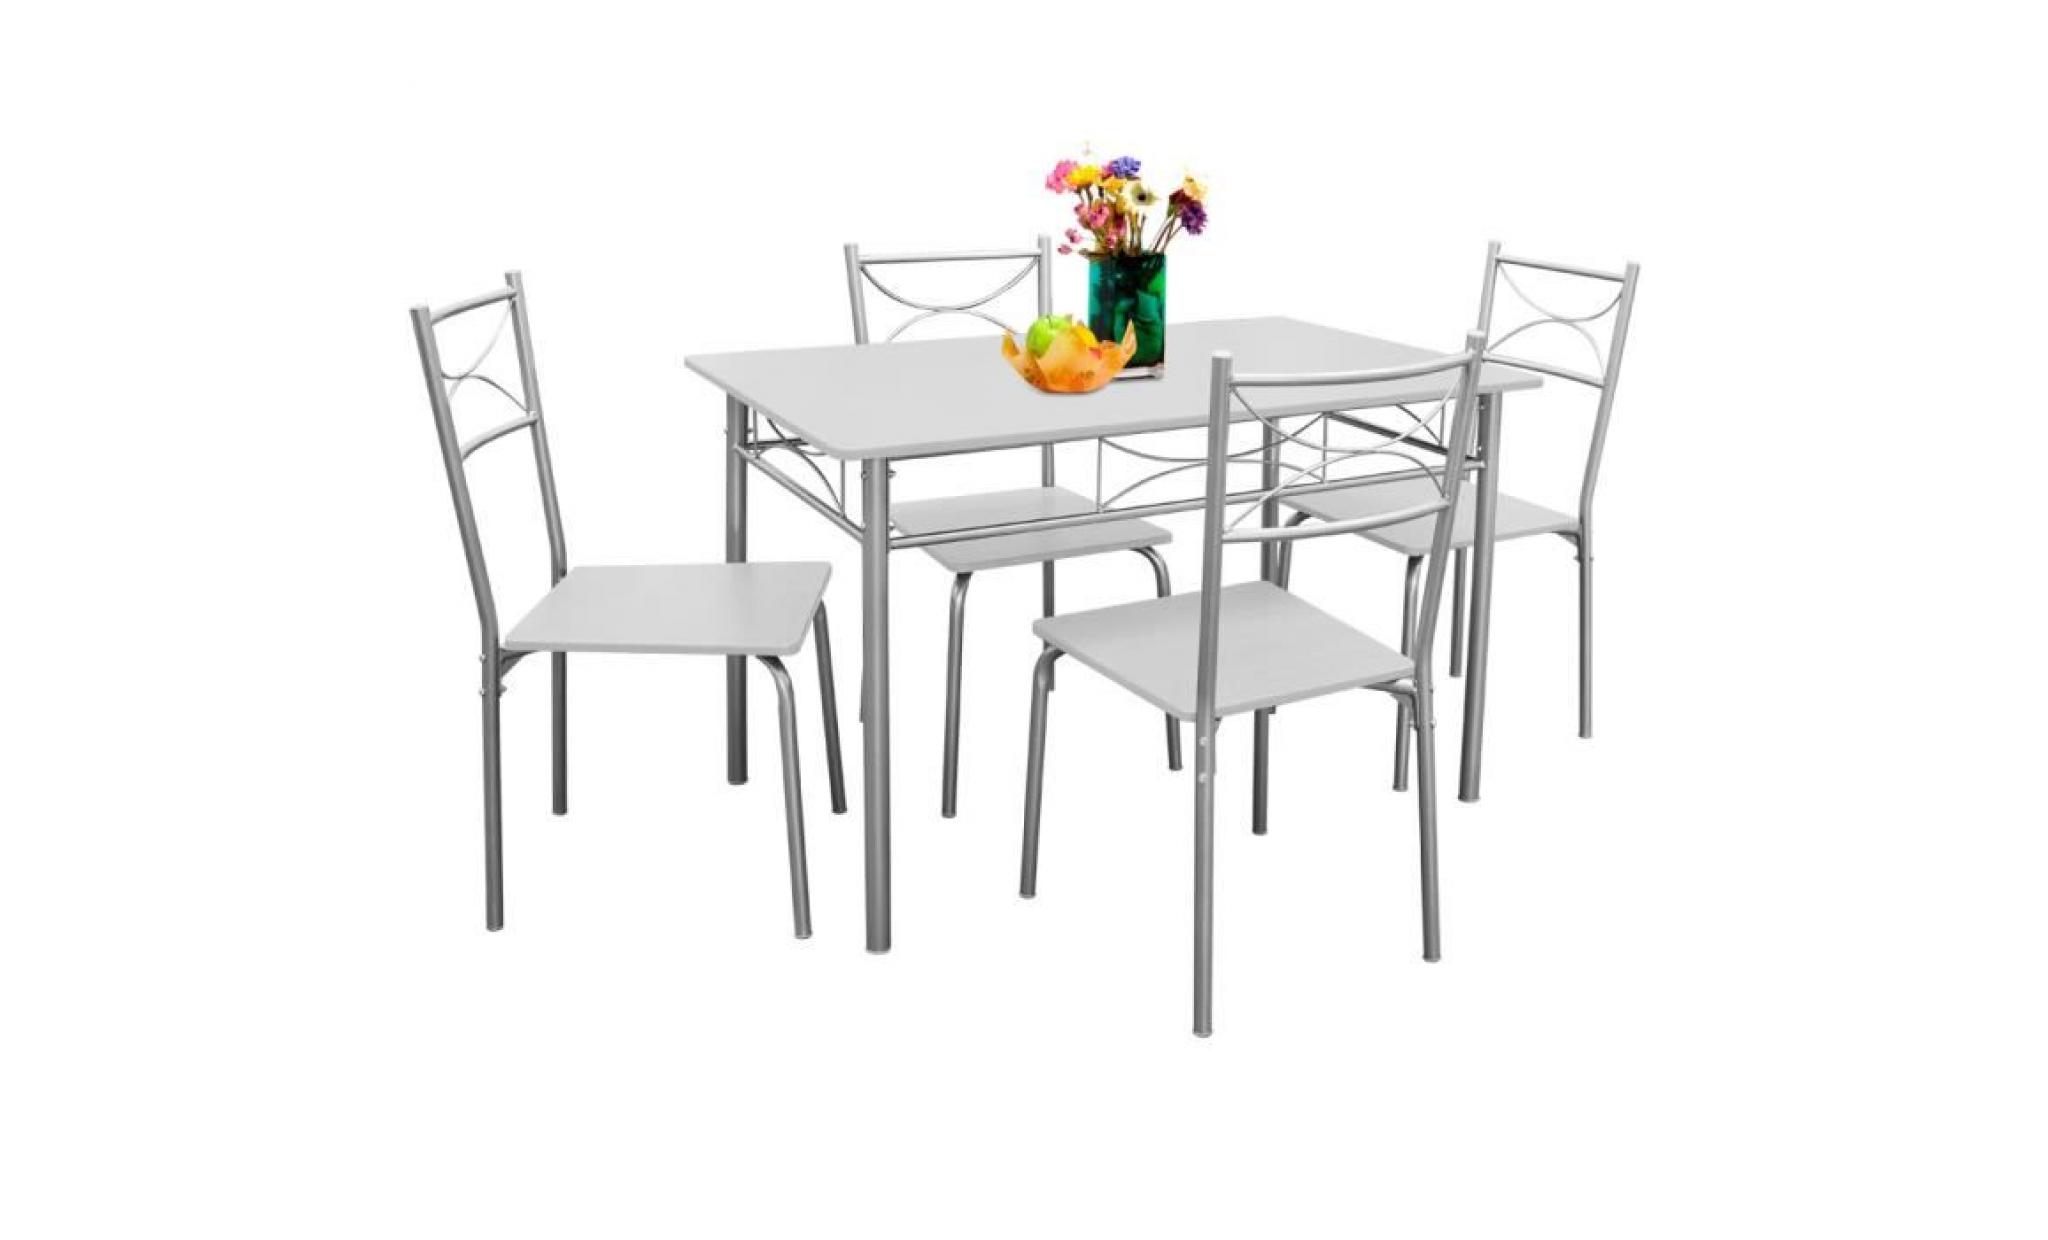 deuba | ensemble paul   salle à manger 5 pièces   1 table et 4 chaises   résistant   couleur hêtre   cuisine